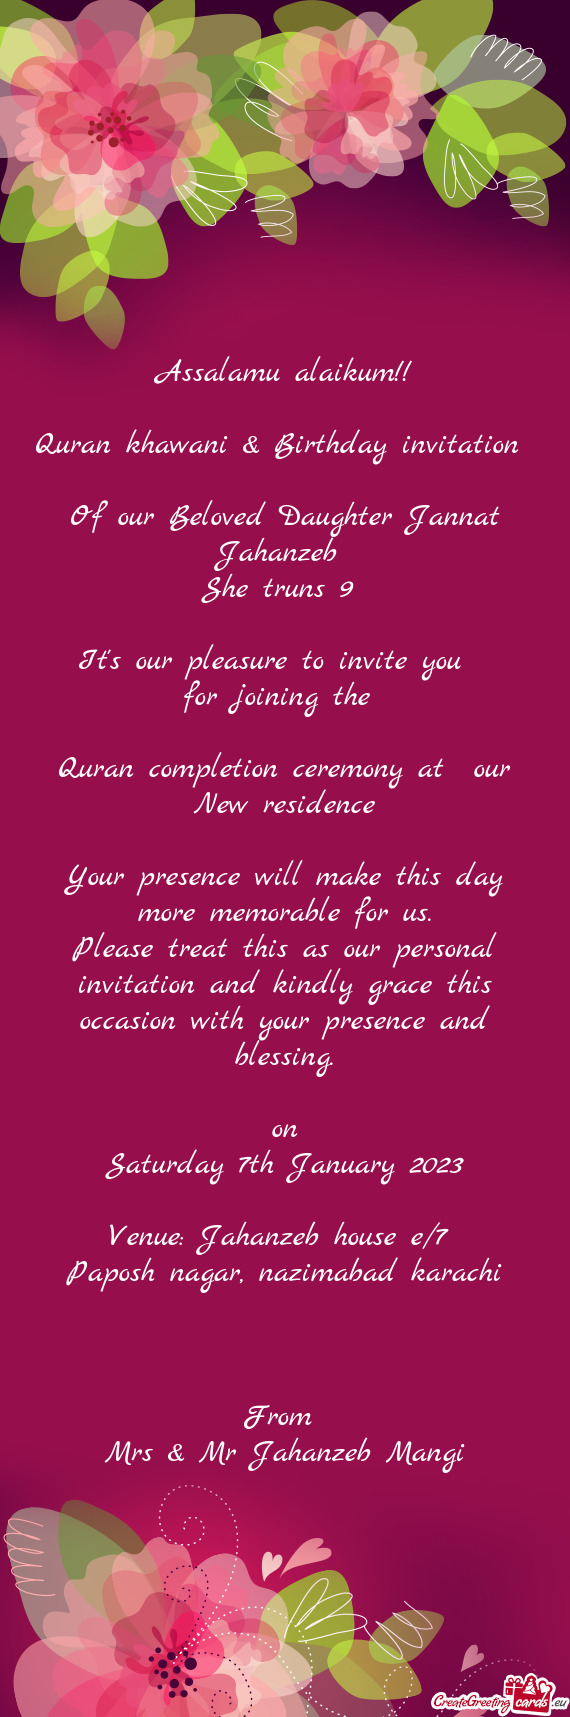 Quran khawani & Birthday invitation